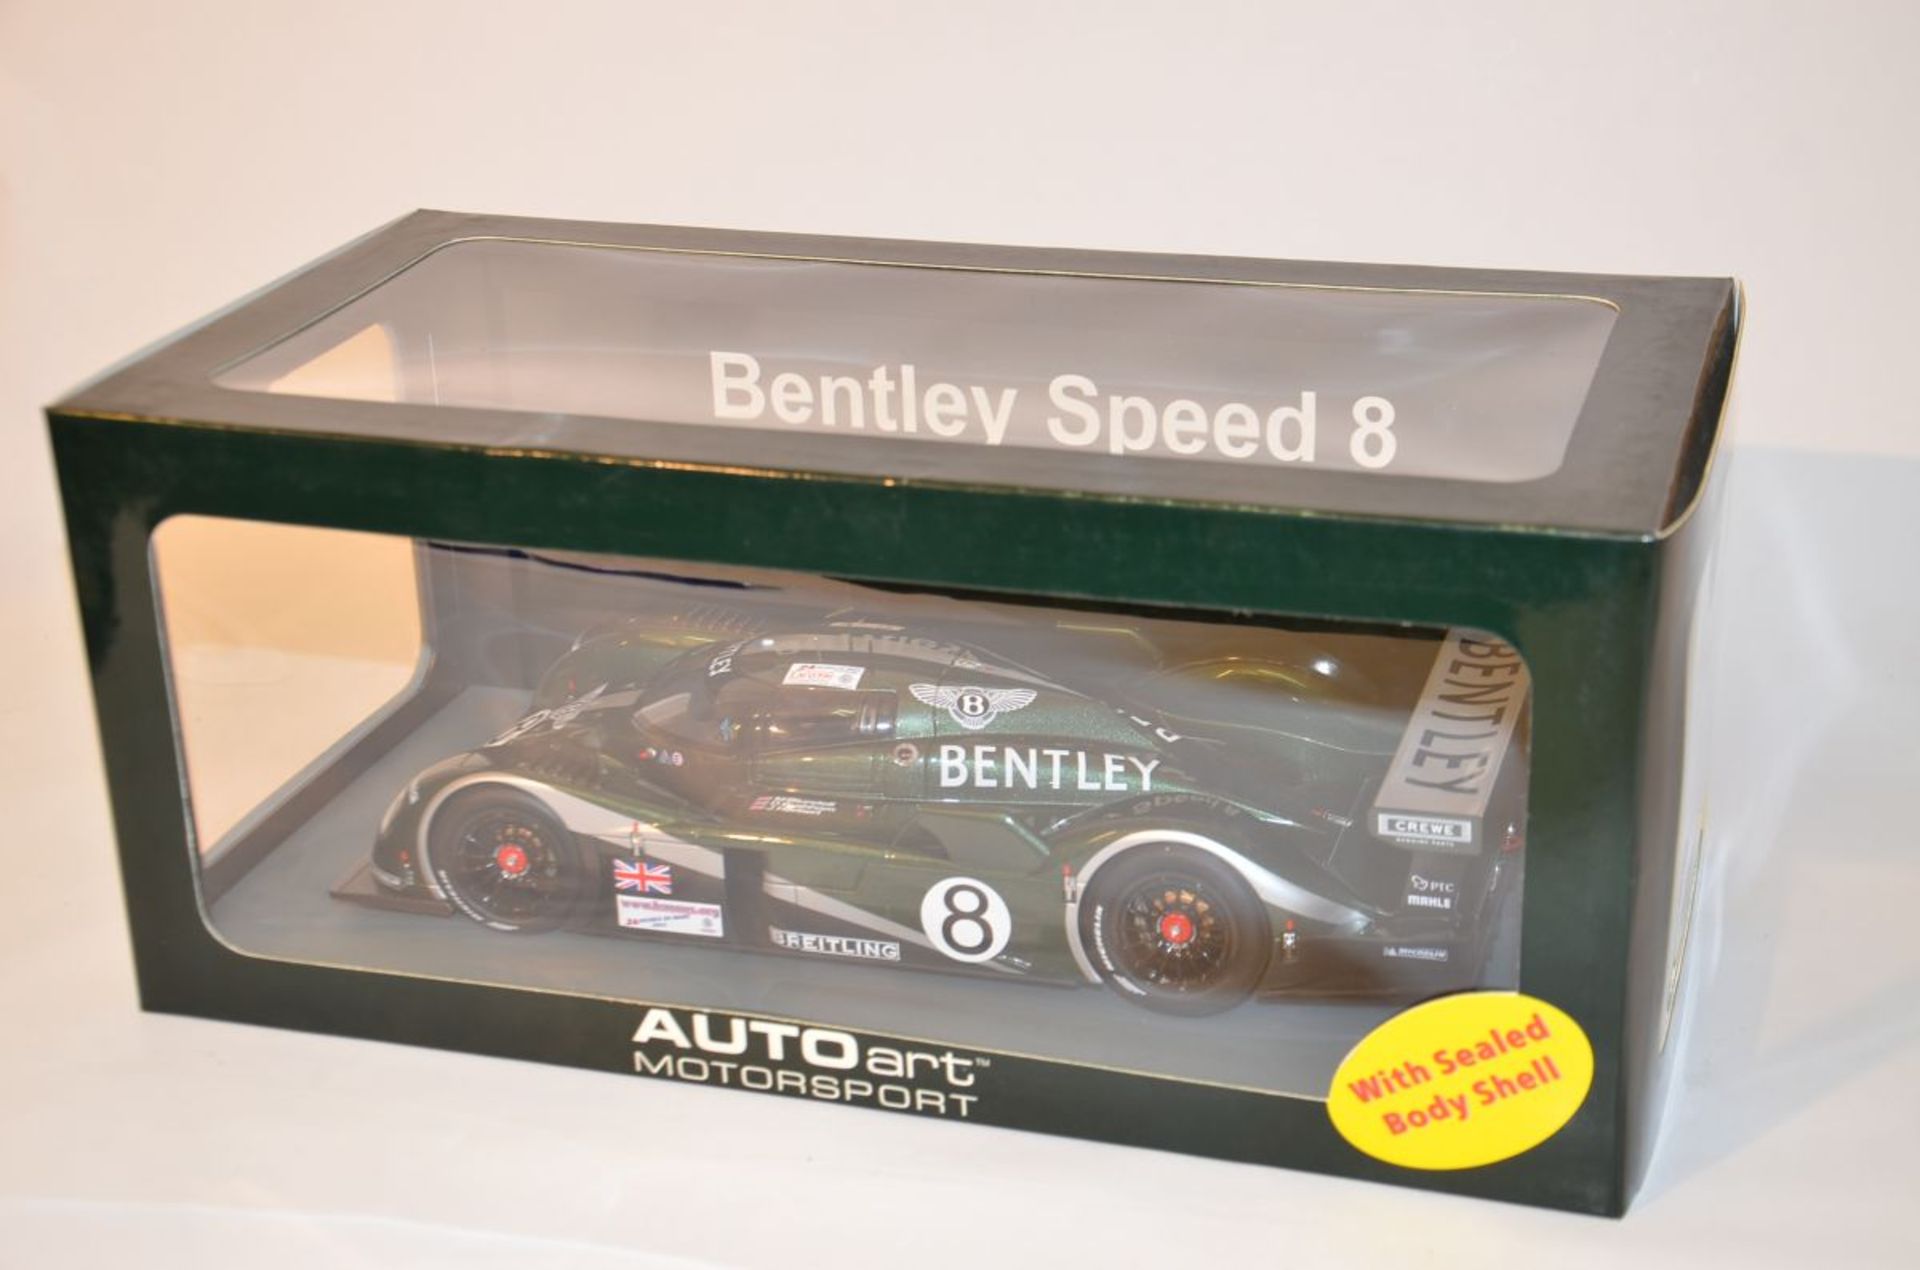 AUTOart Motorsport "Bentley Speed 8 Le Mans 2003"